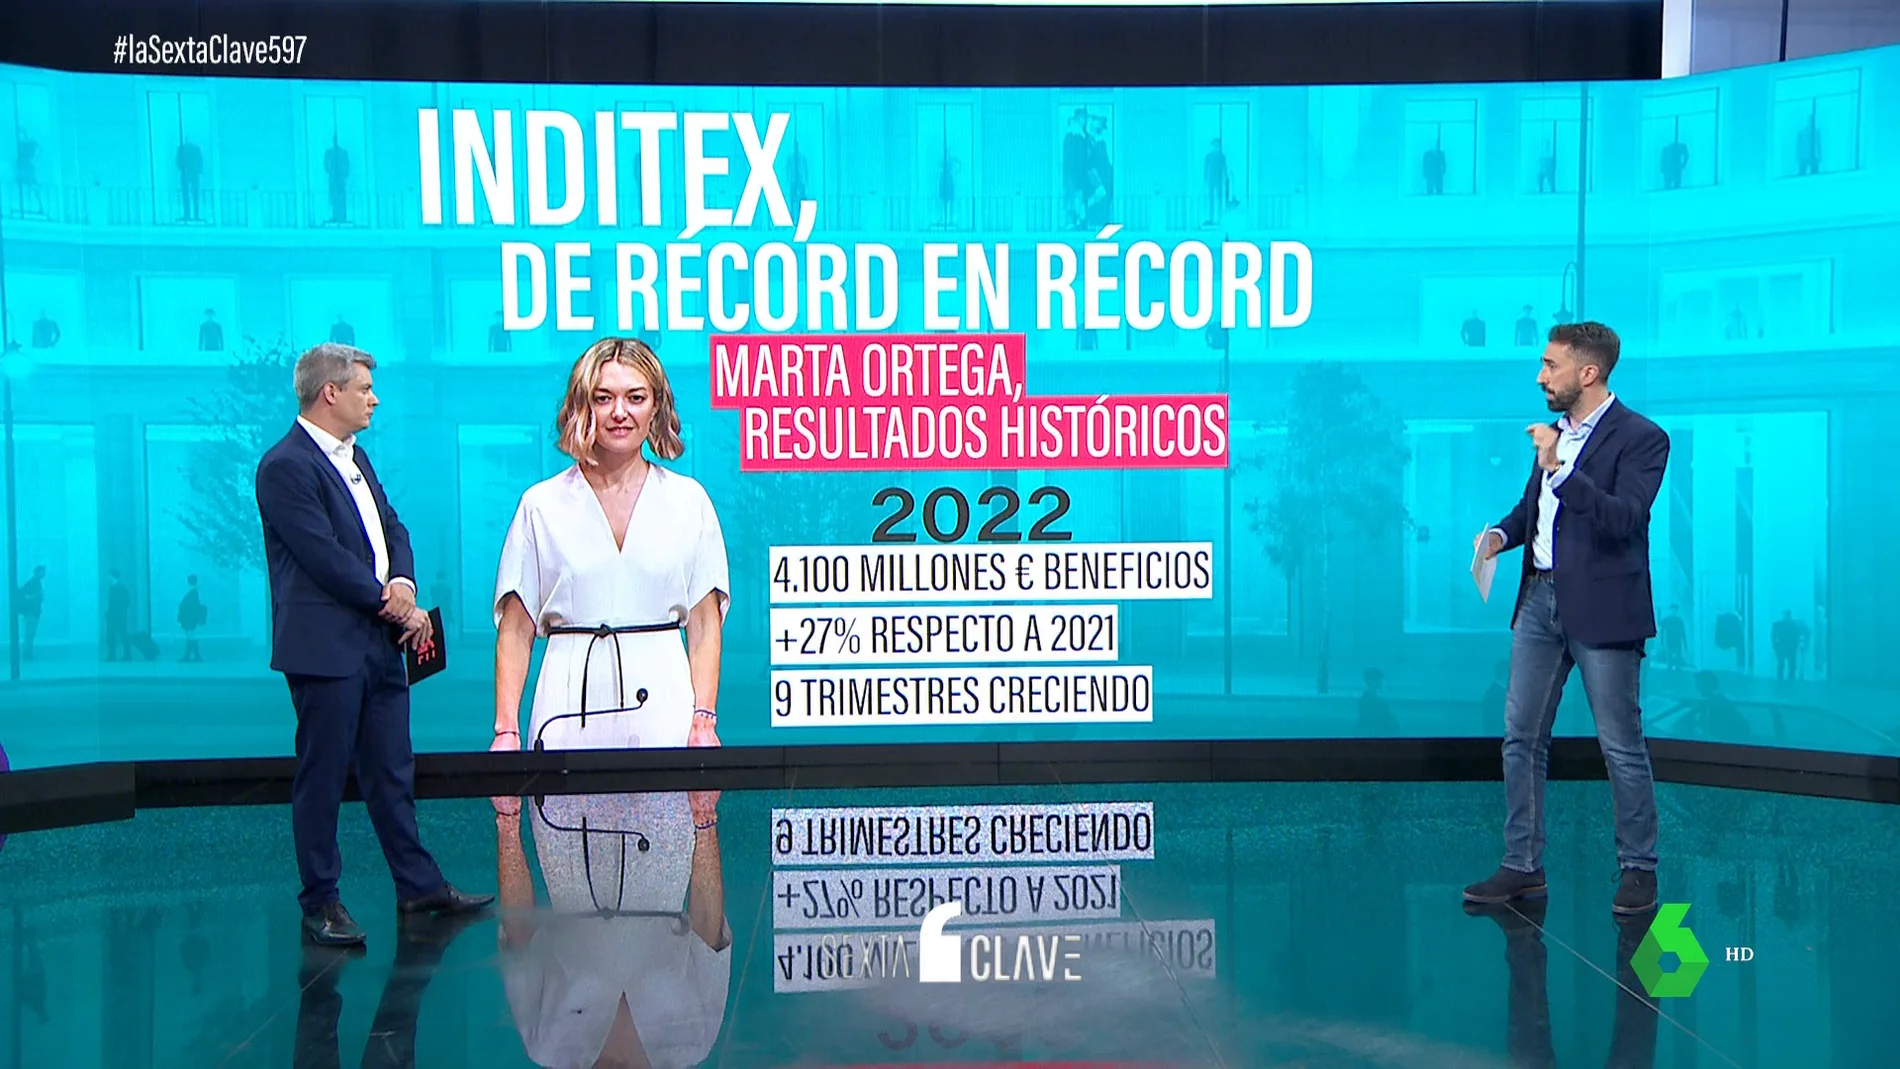 El secreto detrás del éxito de Inditex: Marta Ortega mejora en un 13% la facturación respecto al año anterior